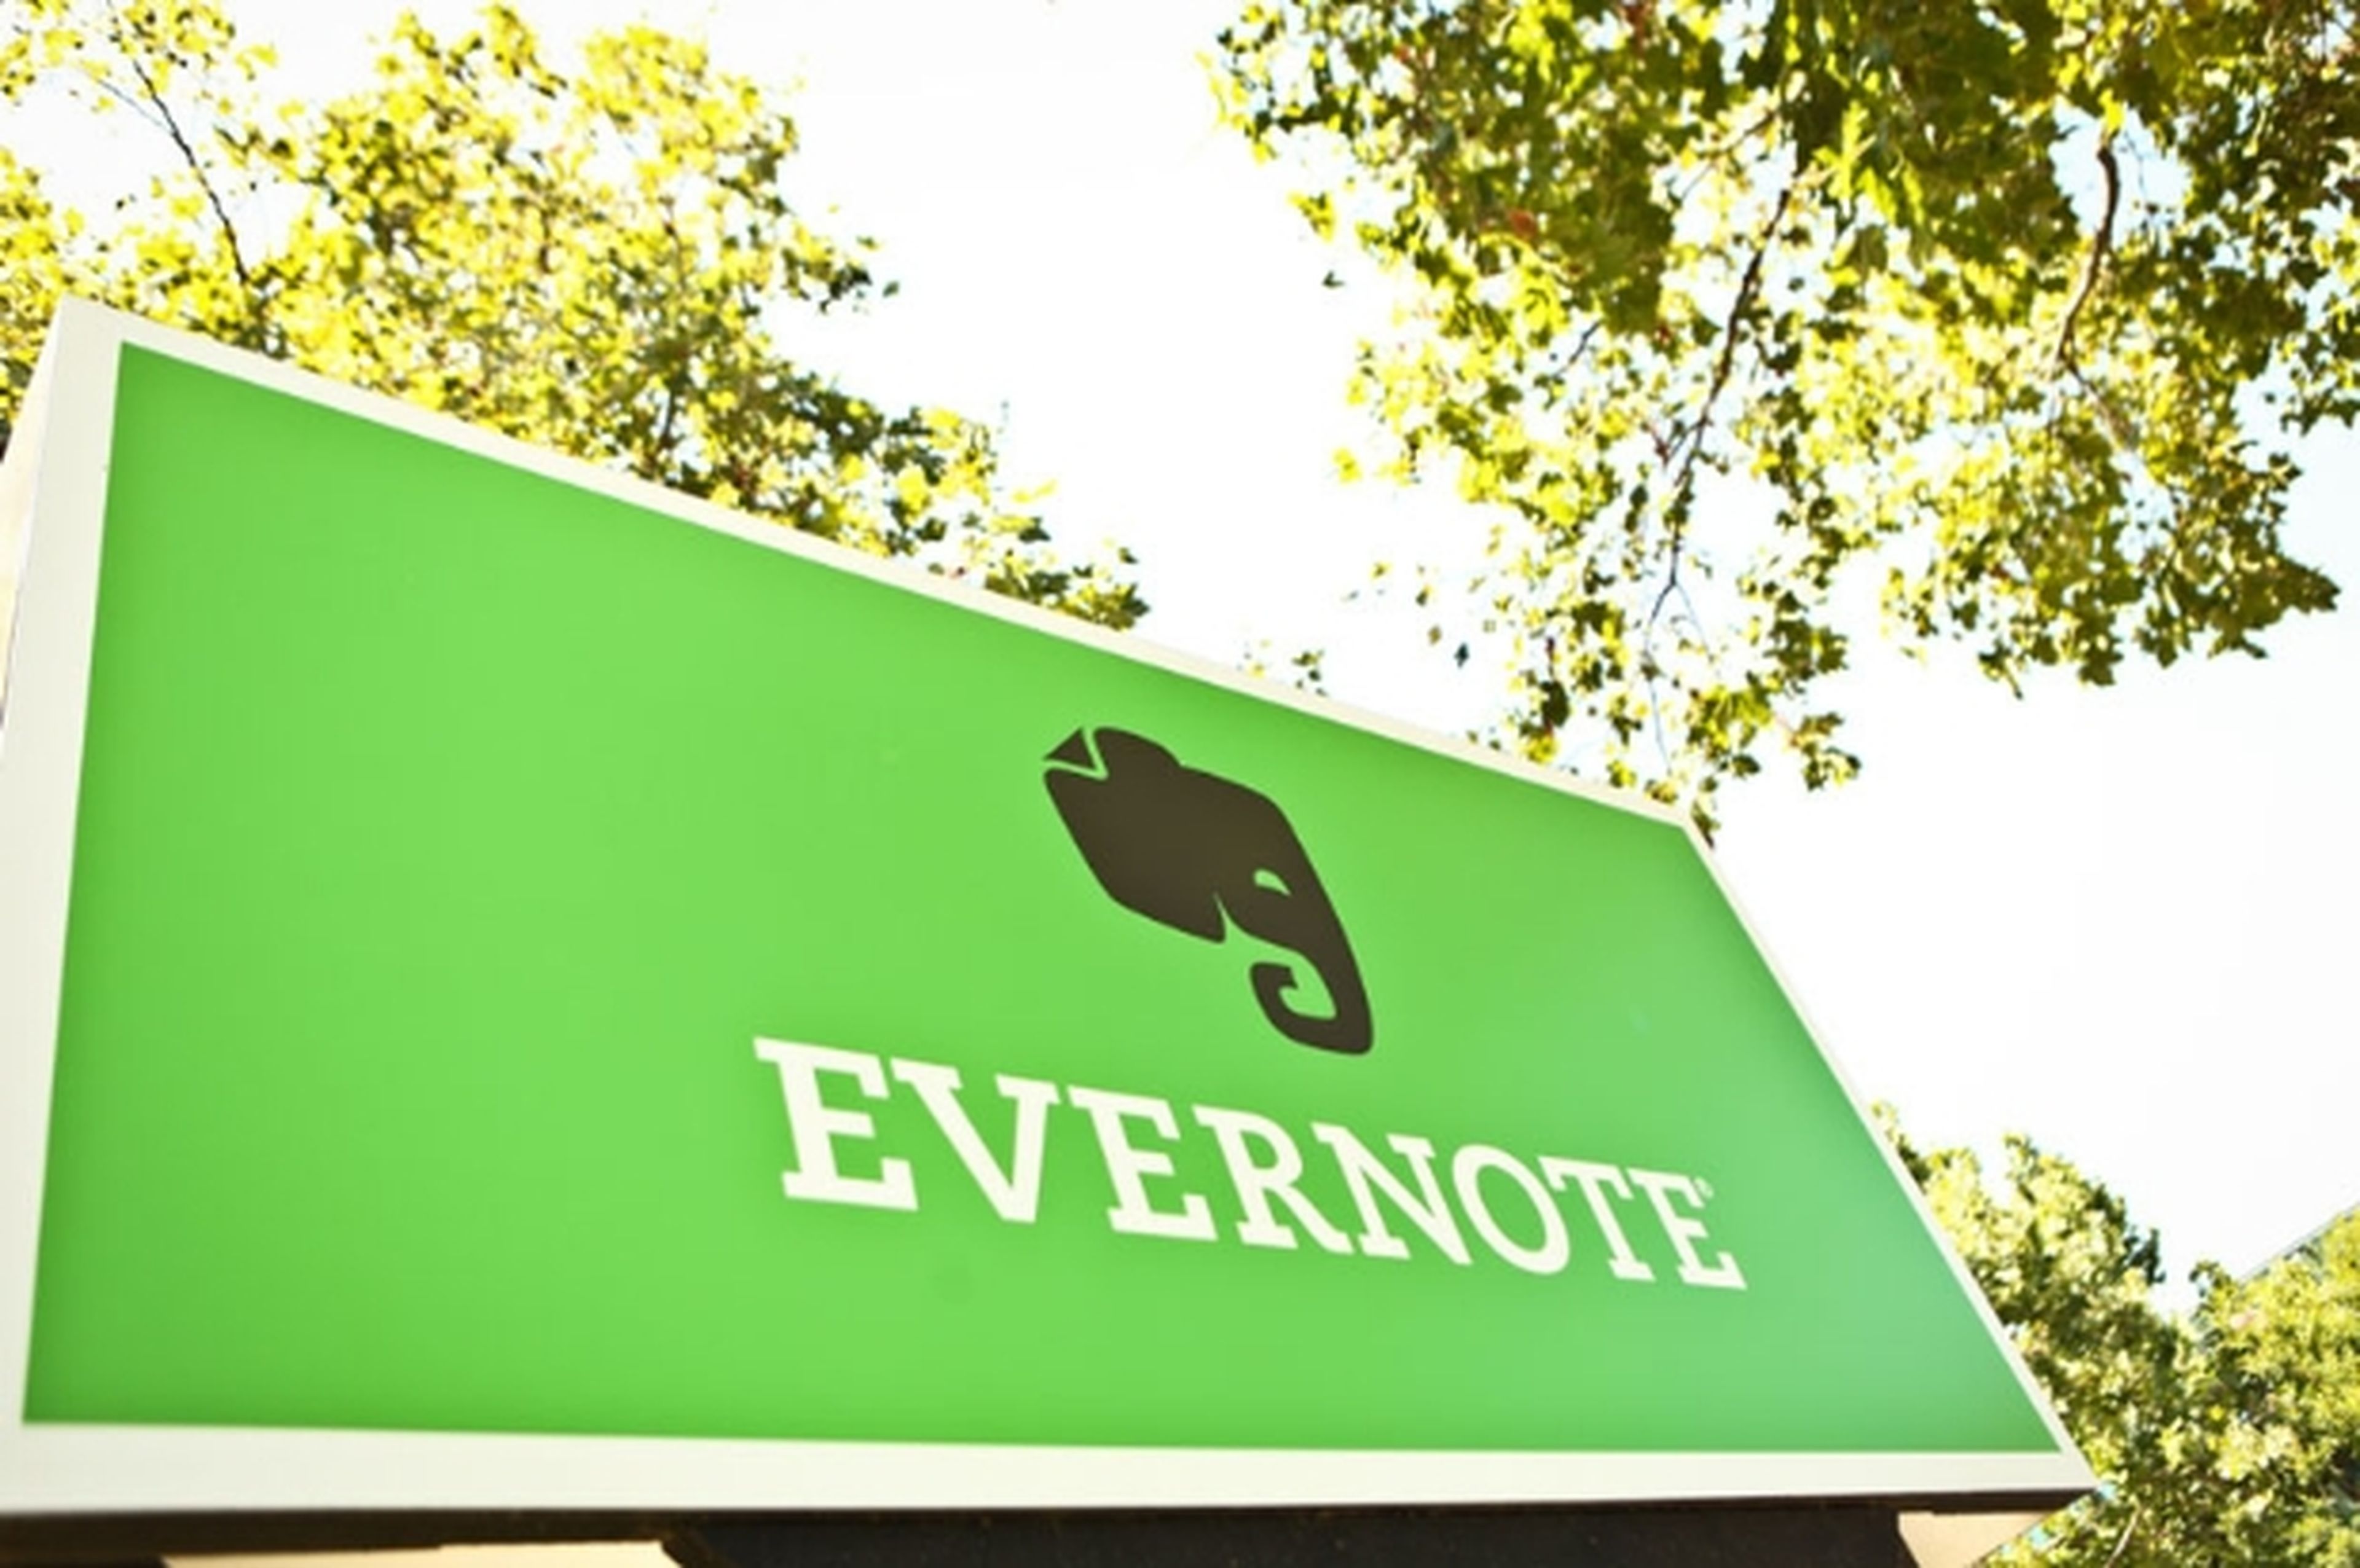 Telefónica y Evernote se alían para ofrecer cuentas Evernote Premium gratis